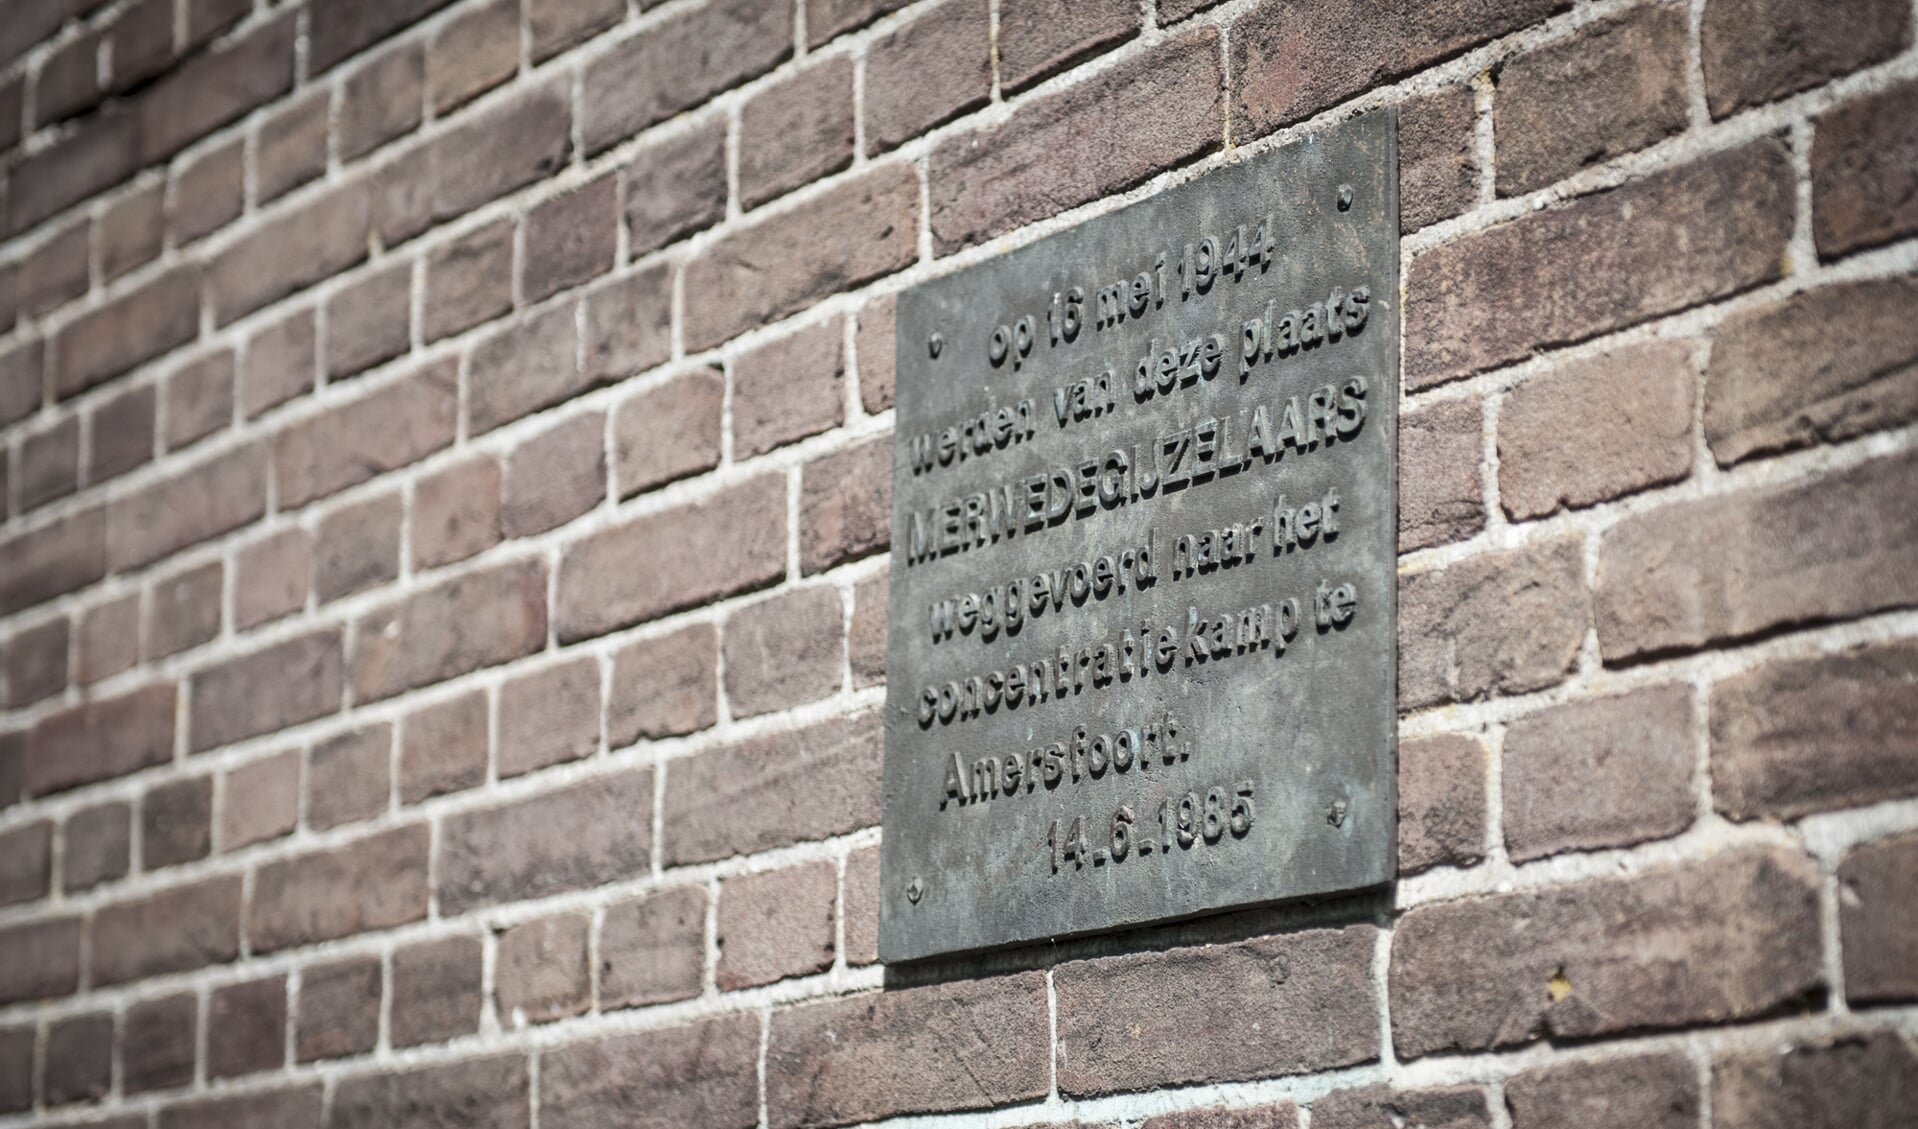 De plaquette ter herdenking van de merwedegijzelaars.